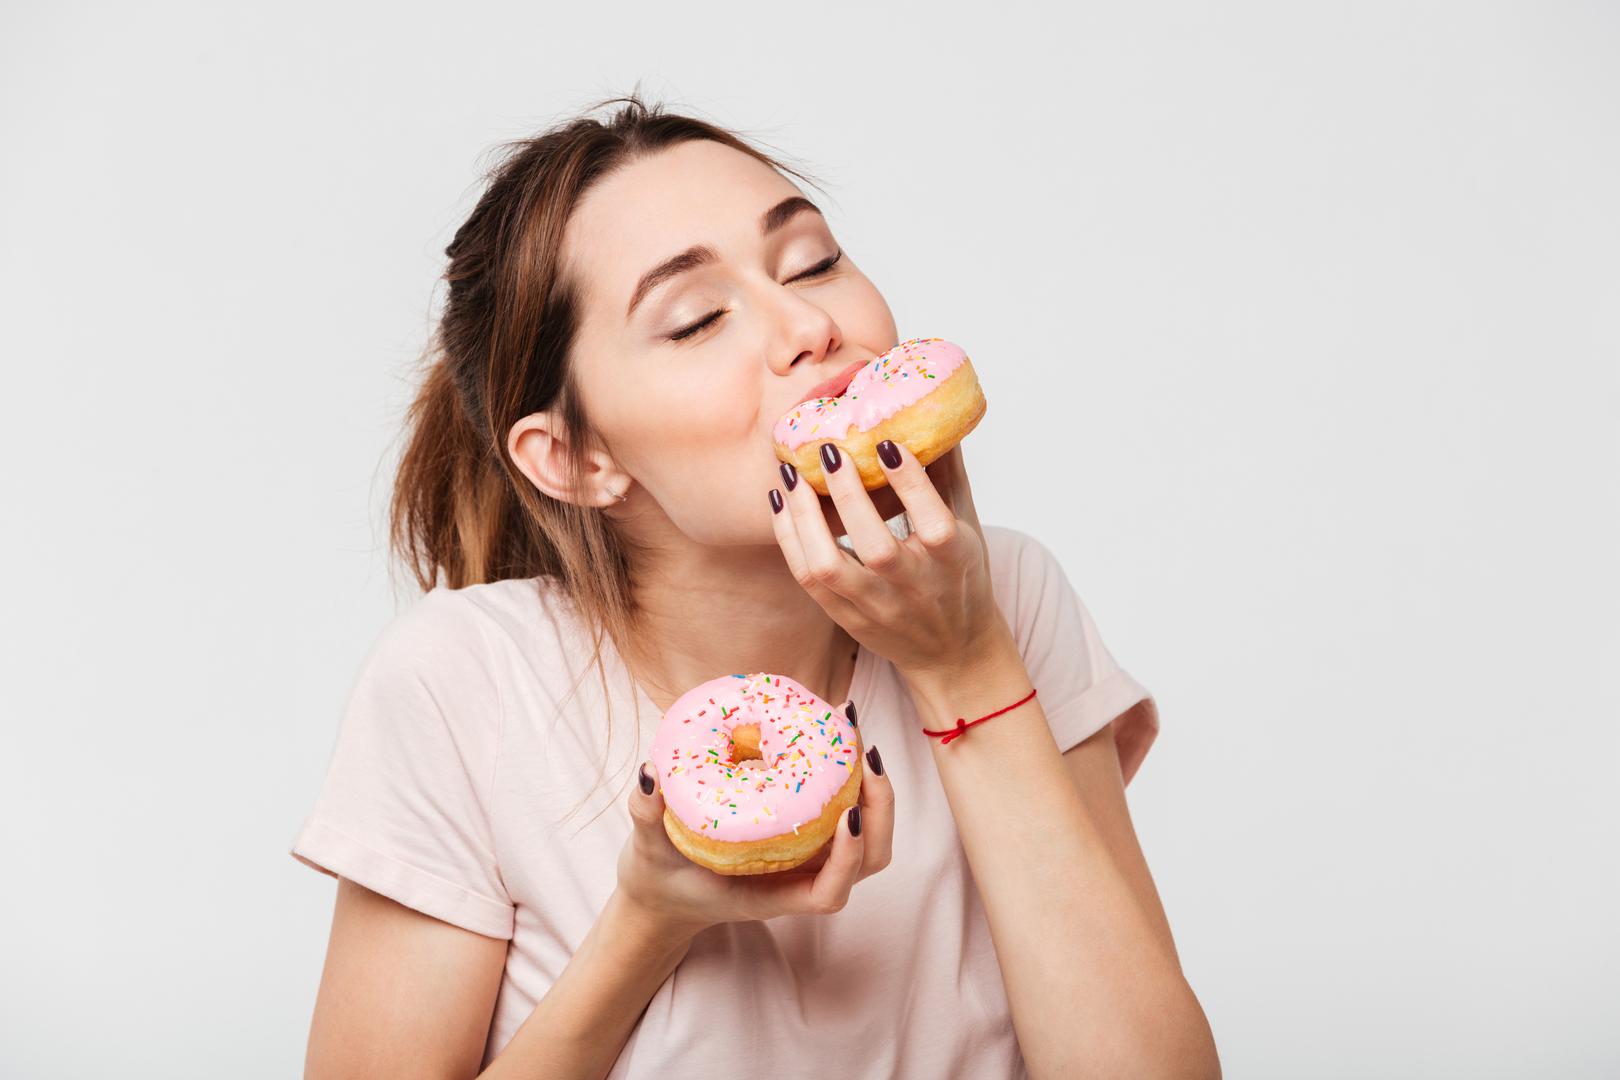 Kada je u pitanju svakodnevna prehrana, pretjerana konzumacija slatkih poslastica može uzrokovati probleme s leđima jer mnogo šećera dovodi do upale u tijelu.